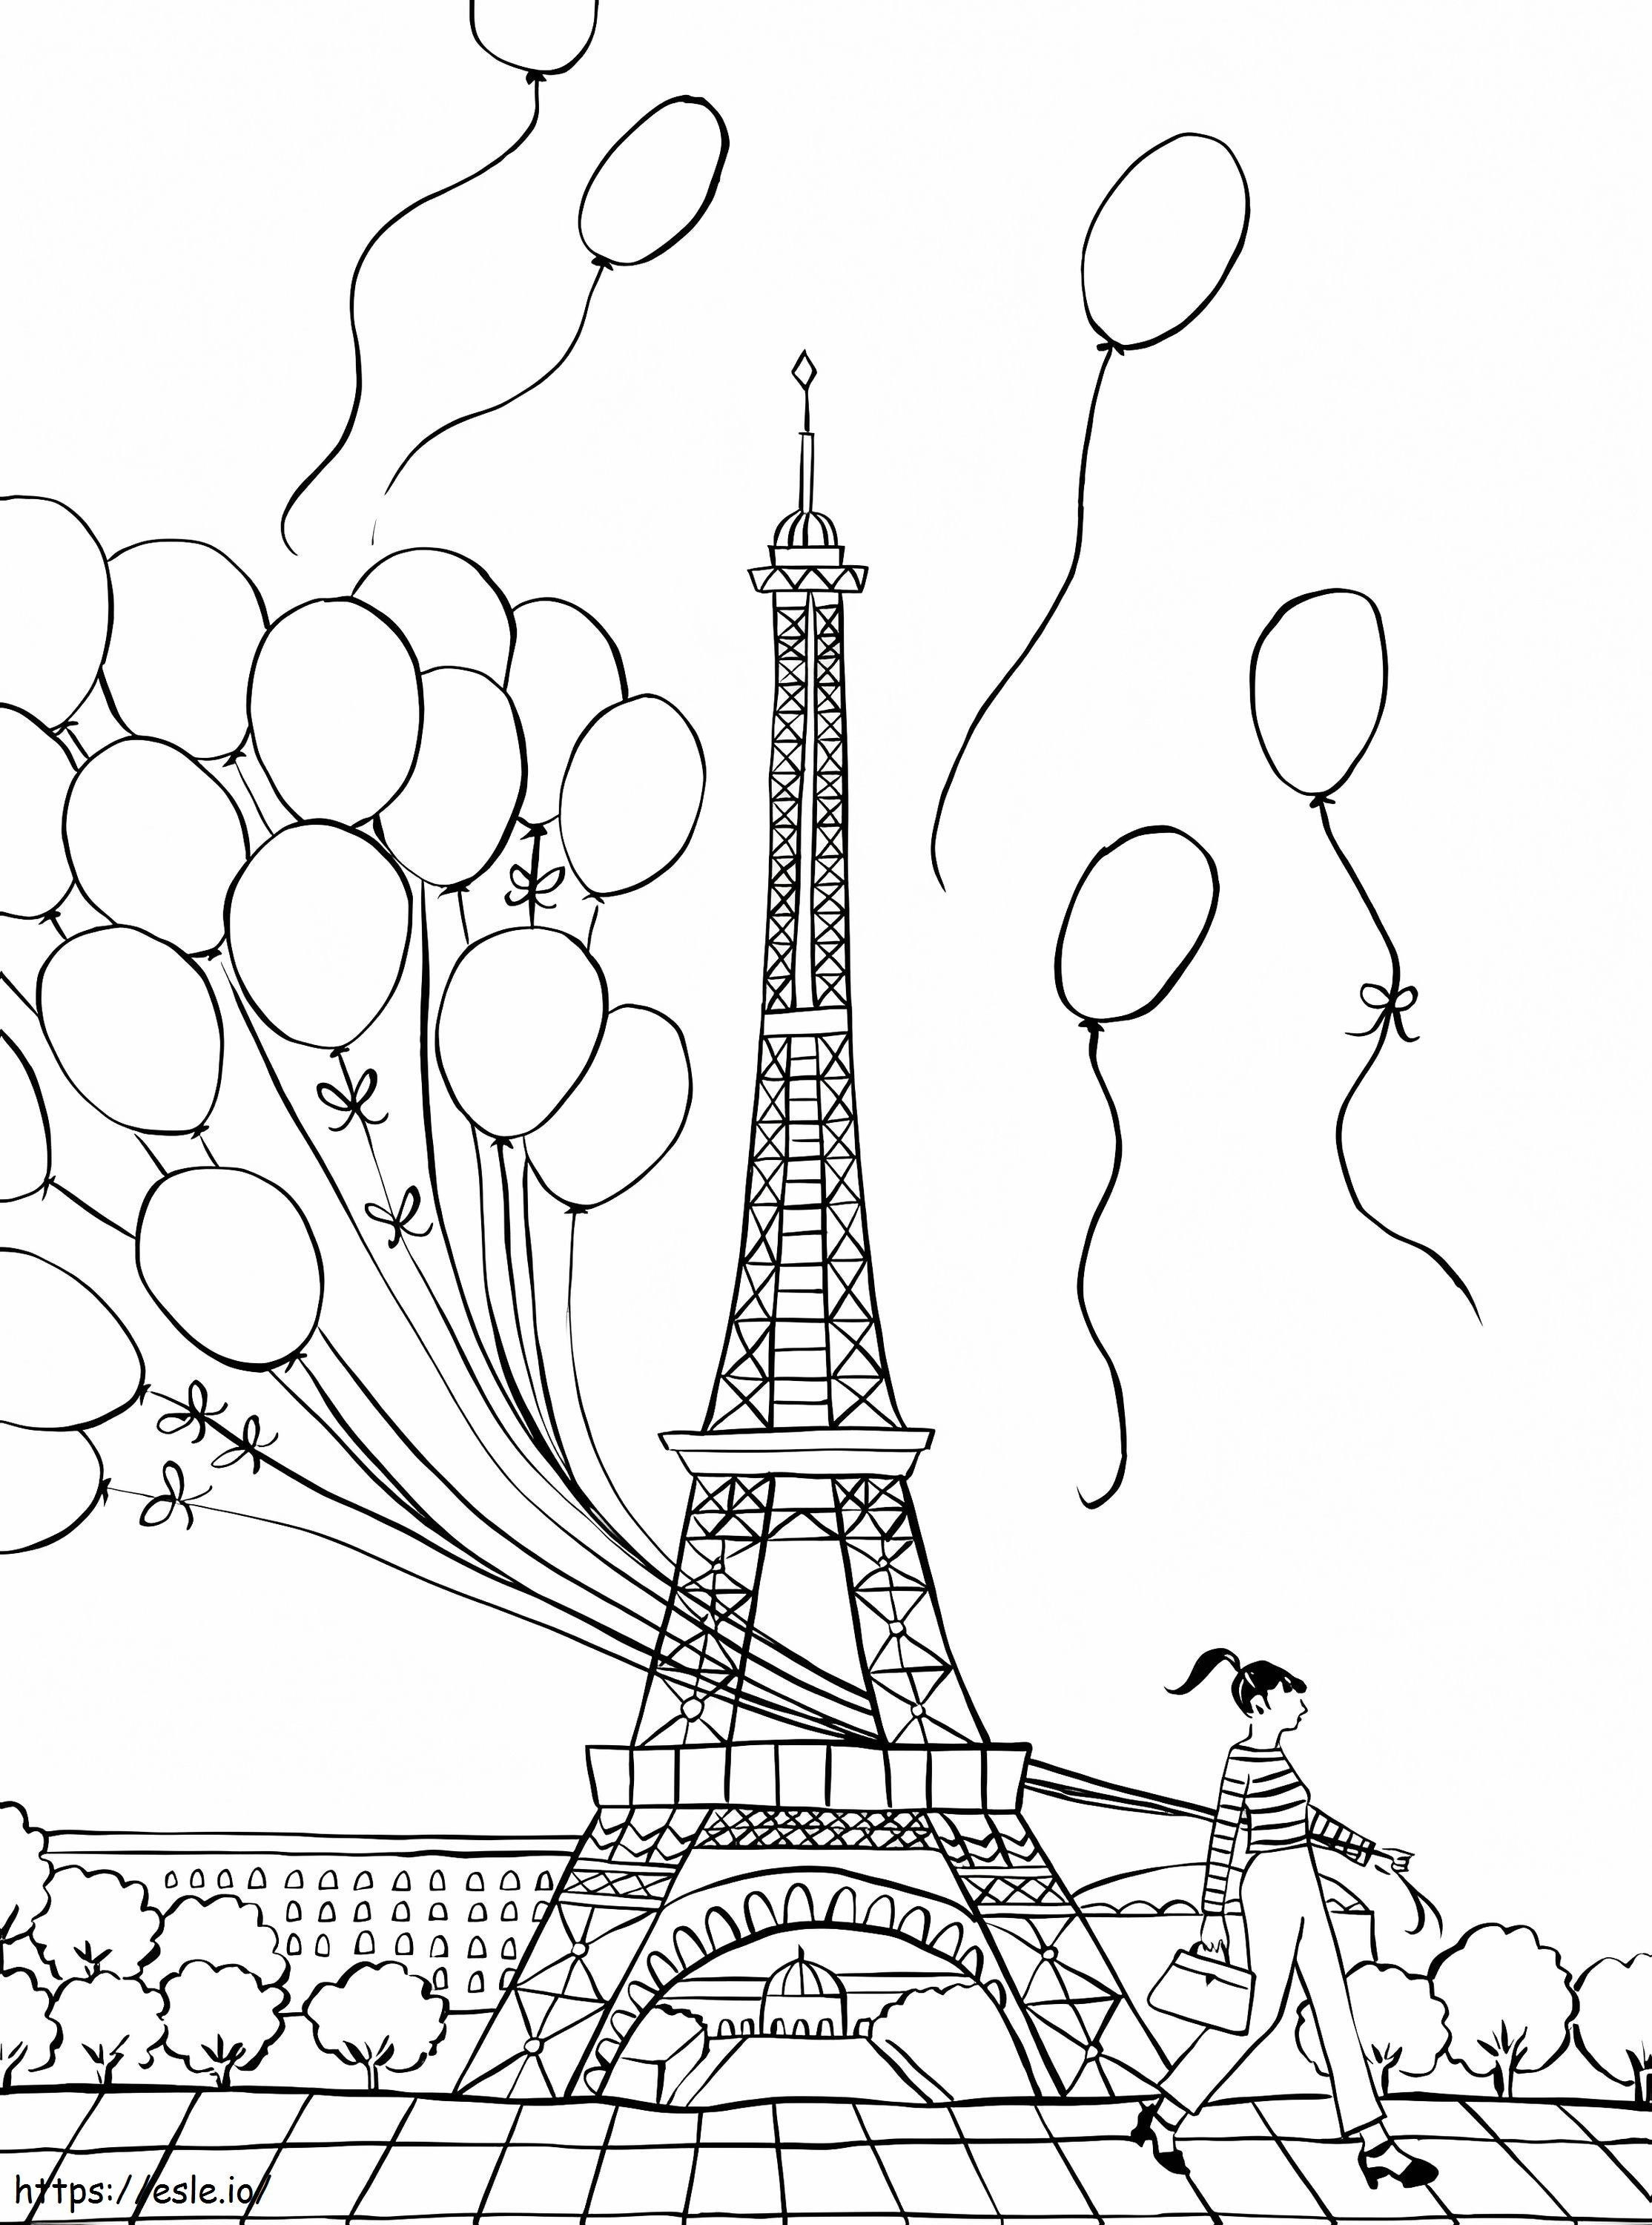 Dziewczyna Trzyma Balon W Paryżu kolorowanka